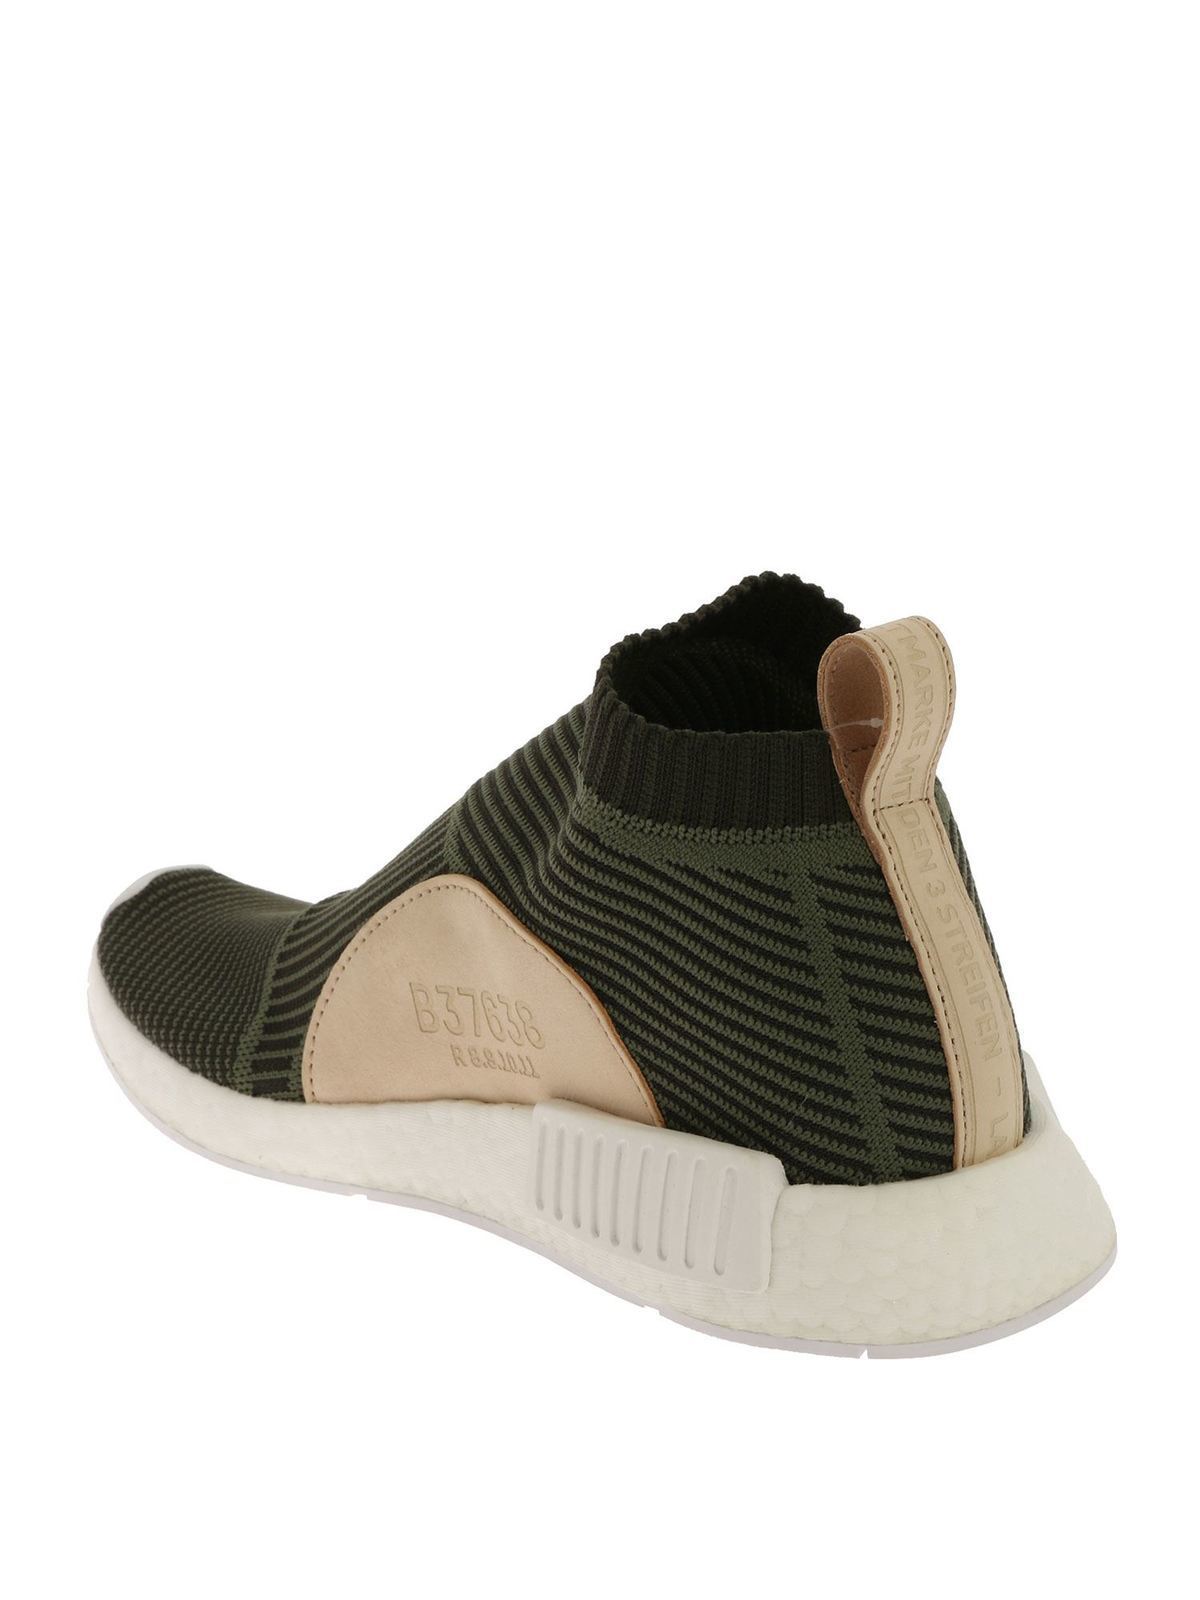 Trainers Adidas Originals - CS1 Primeknit sneakers in green B37638